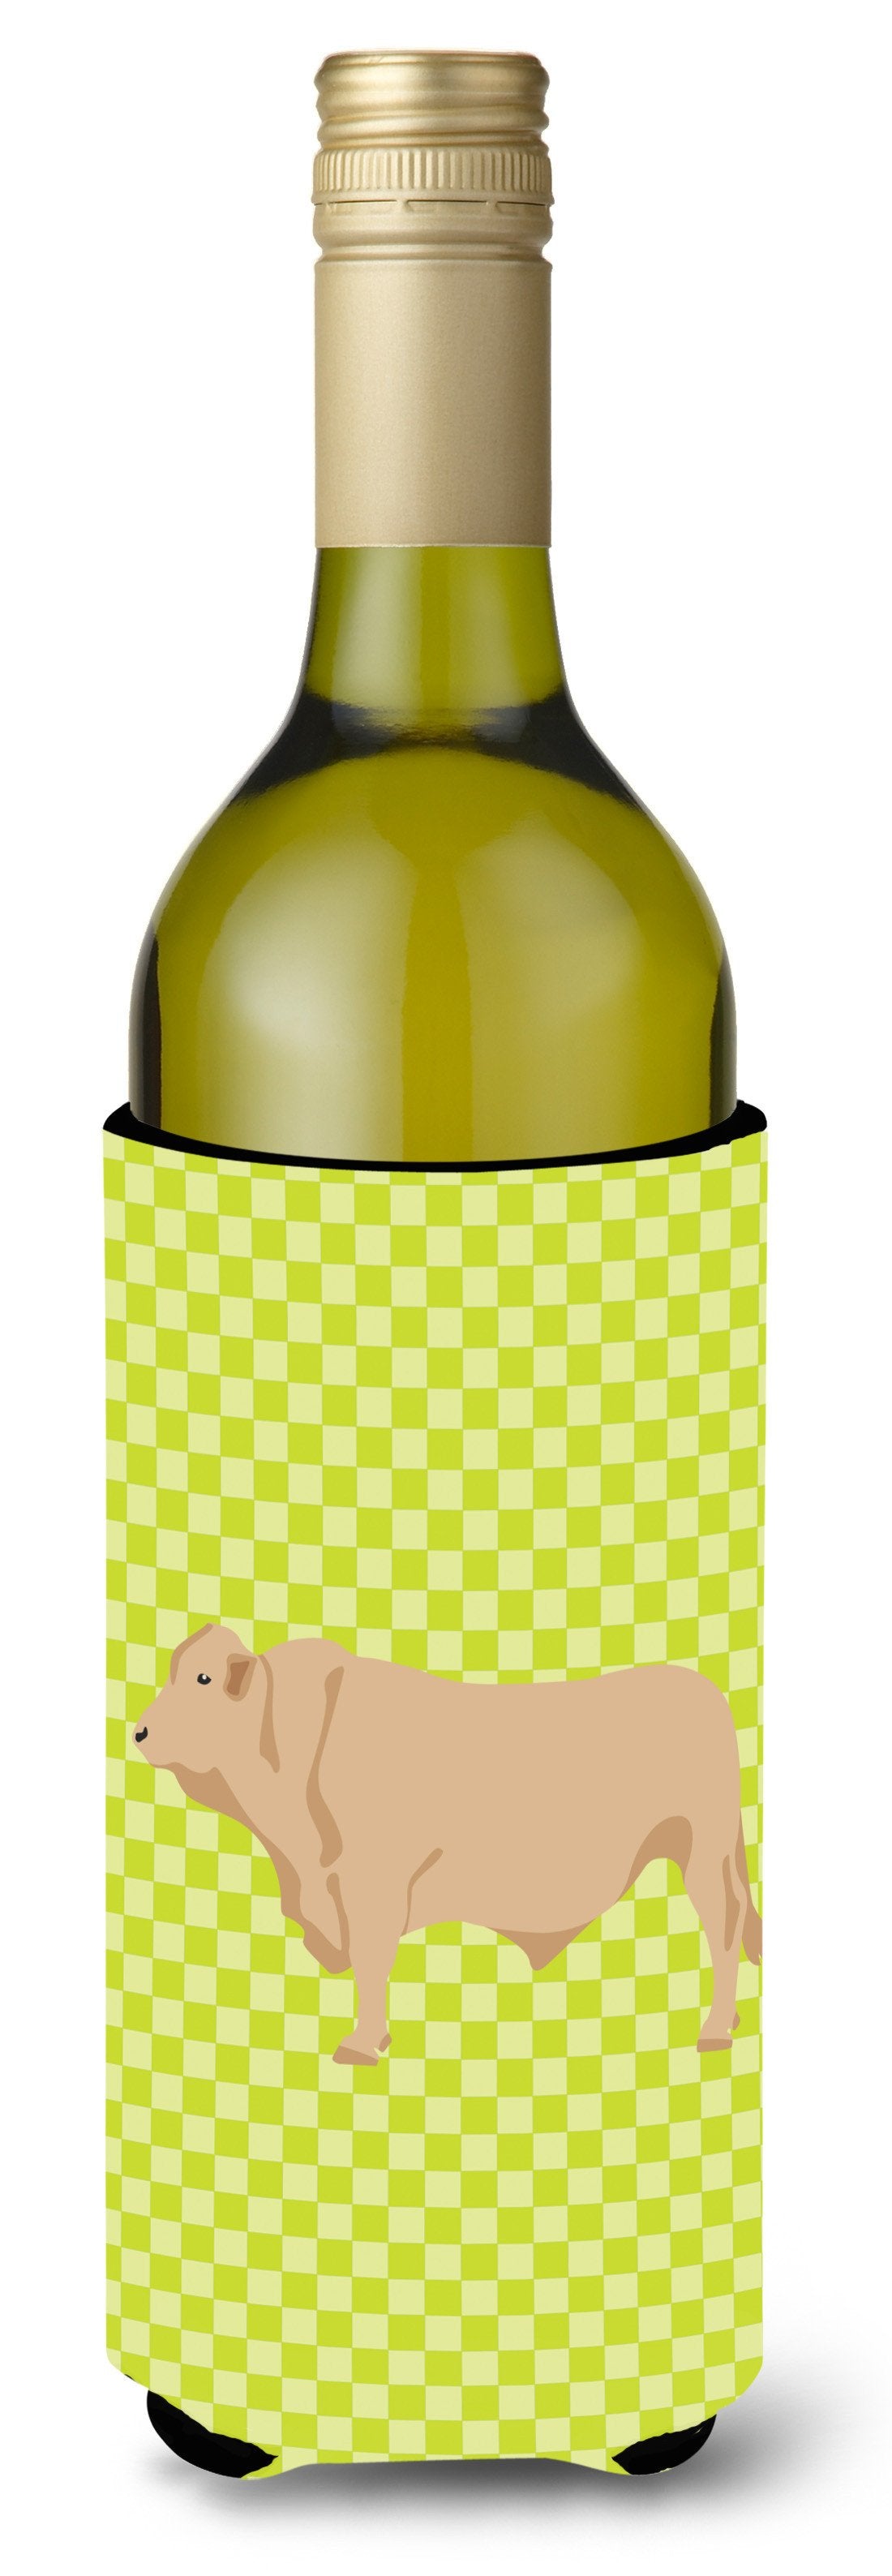 Charolais Cow Green Wine Bottle Beverge Insulator Hugger BB7652LITERK by Caroline's Treasures